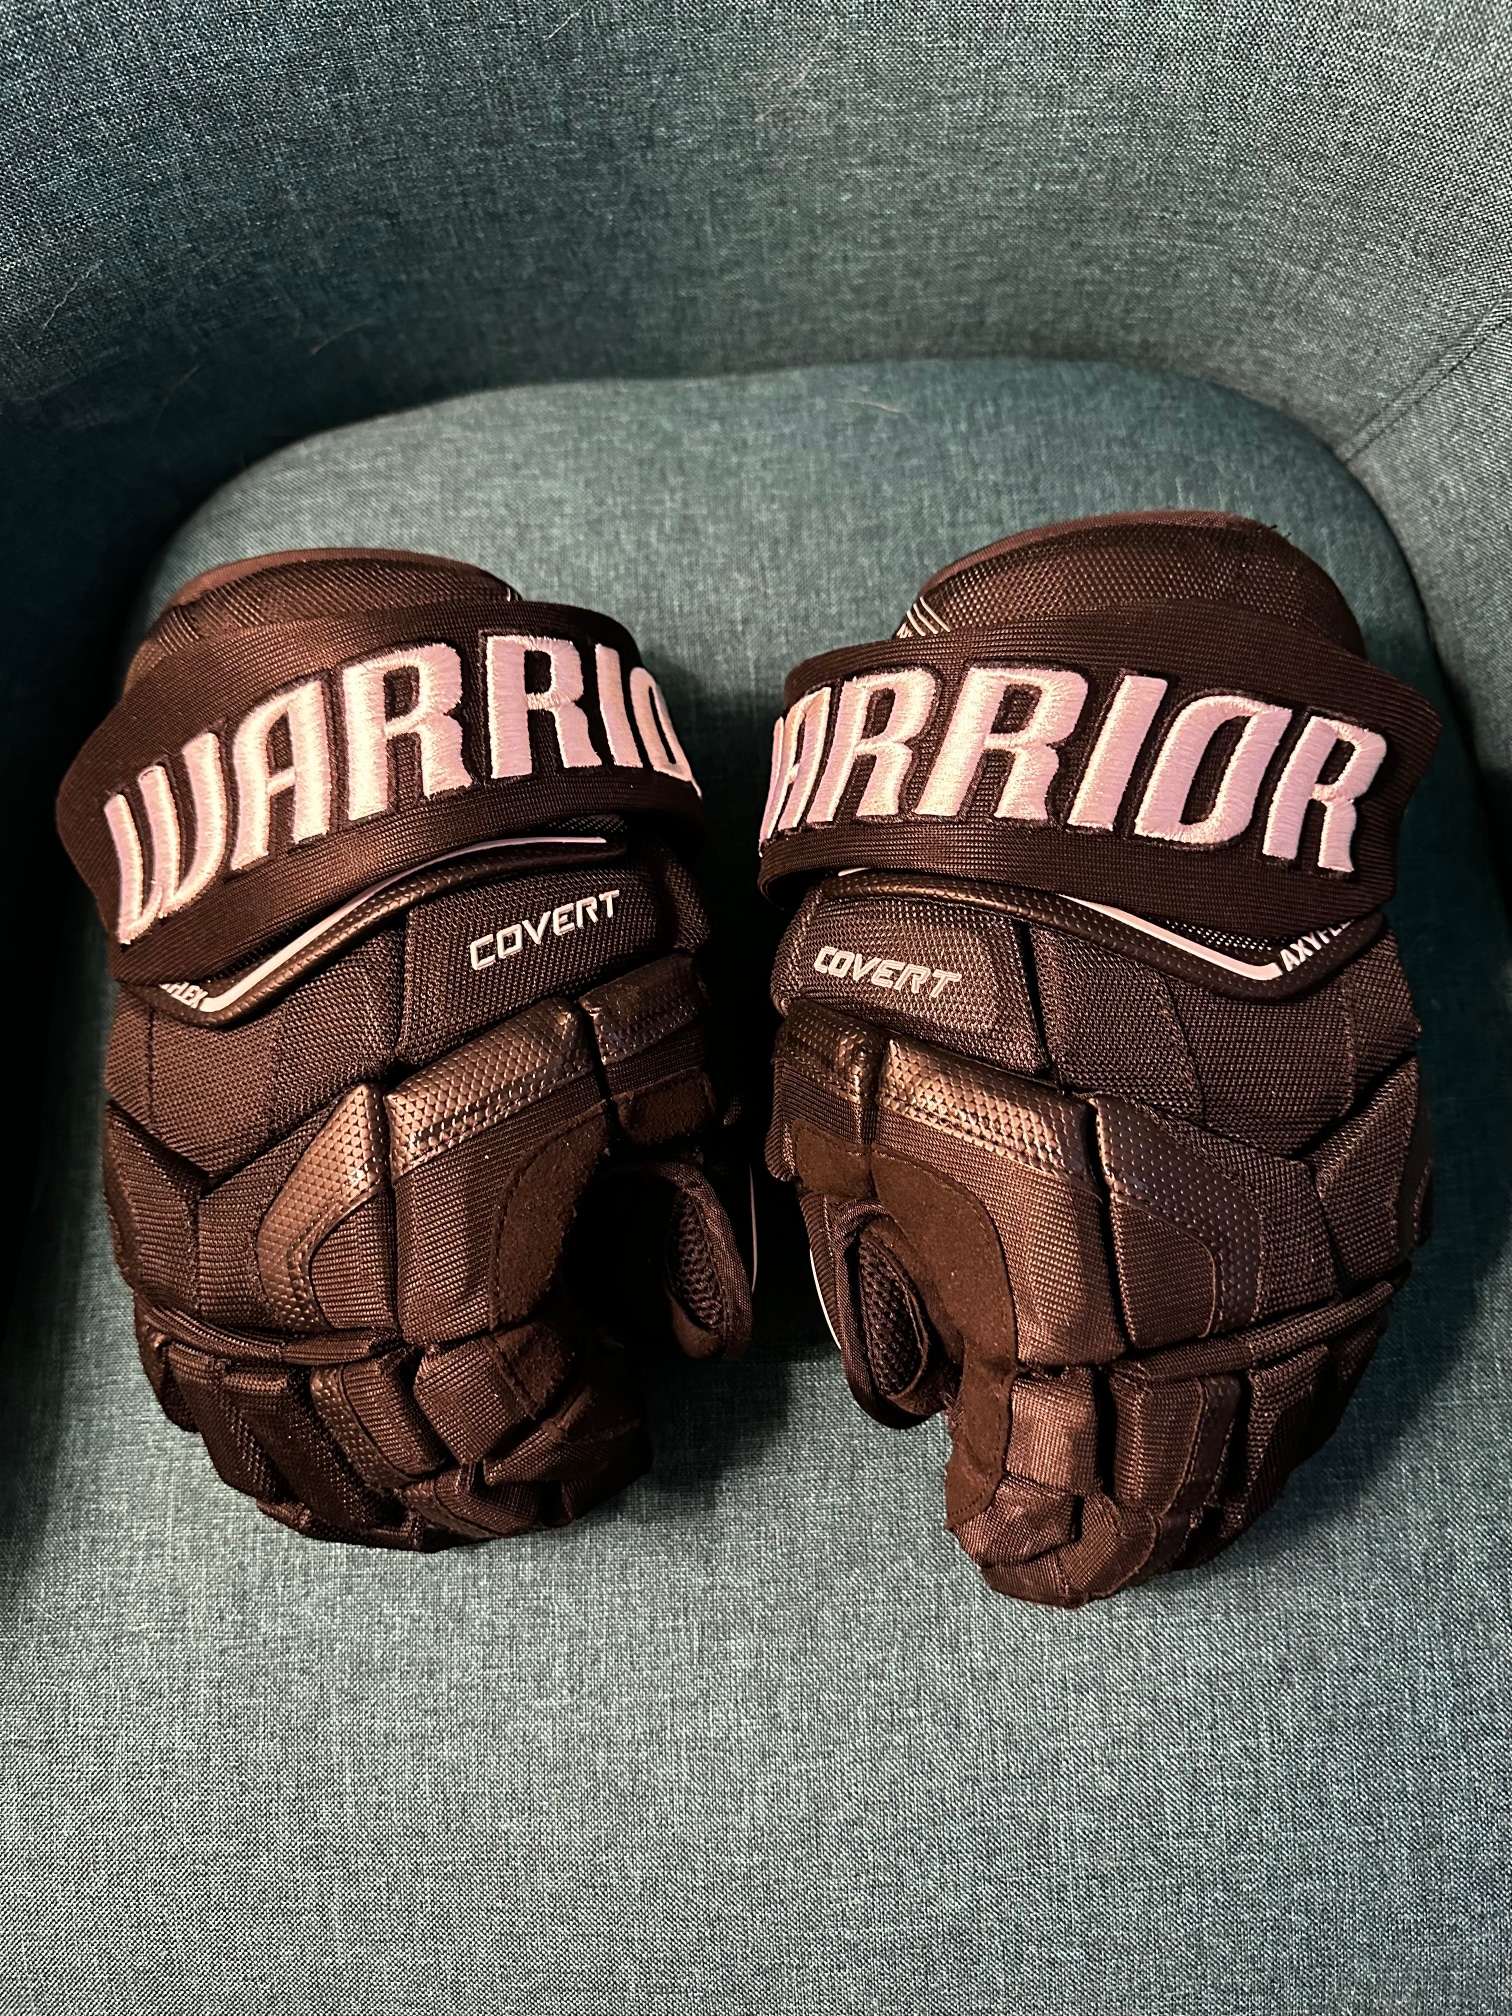 Used Warrior Covert QRE Gloves SR 13" Black